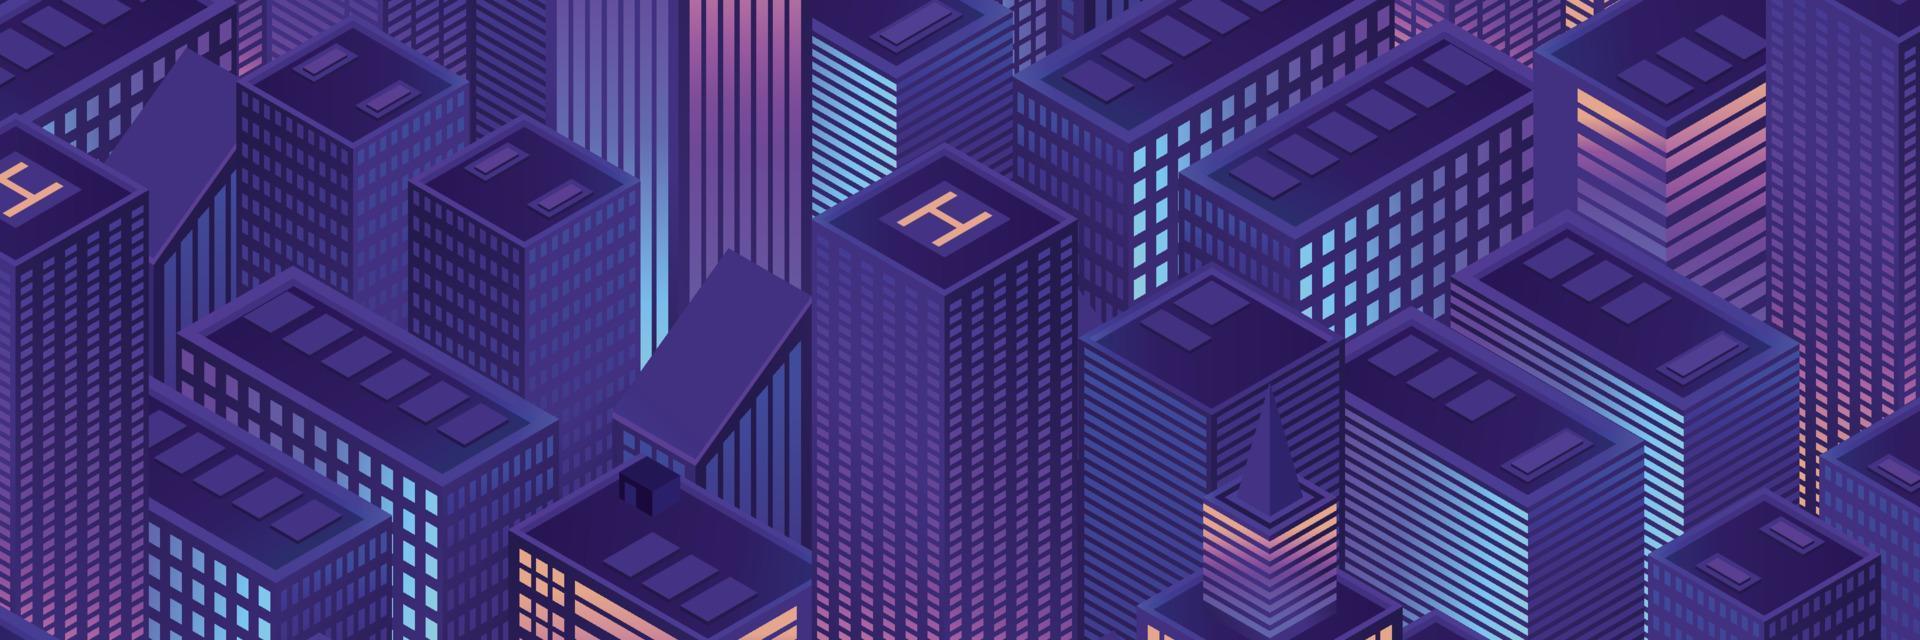 Ilustración de vector de ciudad futurista isométrica. megalópolis urbana isométrica vista superior de la ciudad y arquitectura elementos 3d diferentes edificios